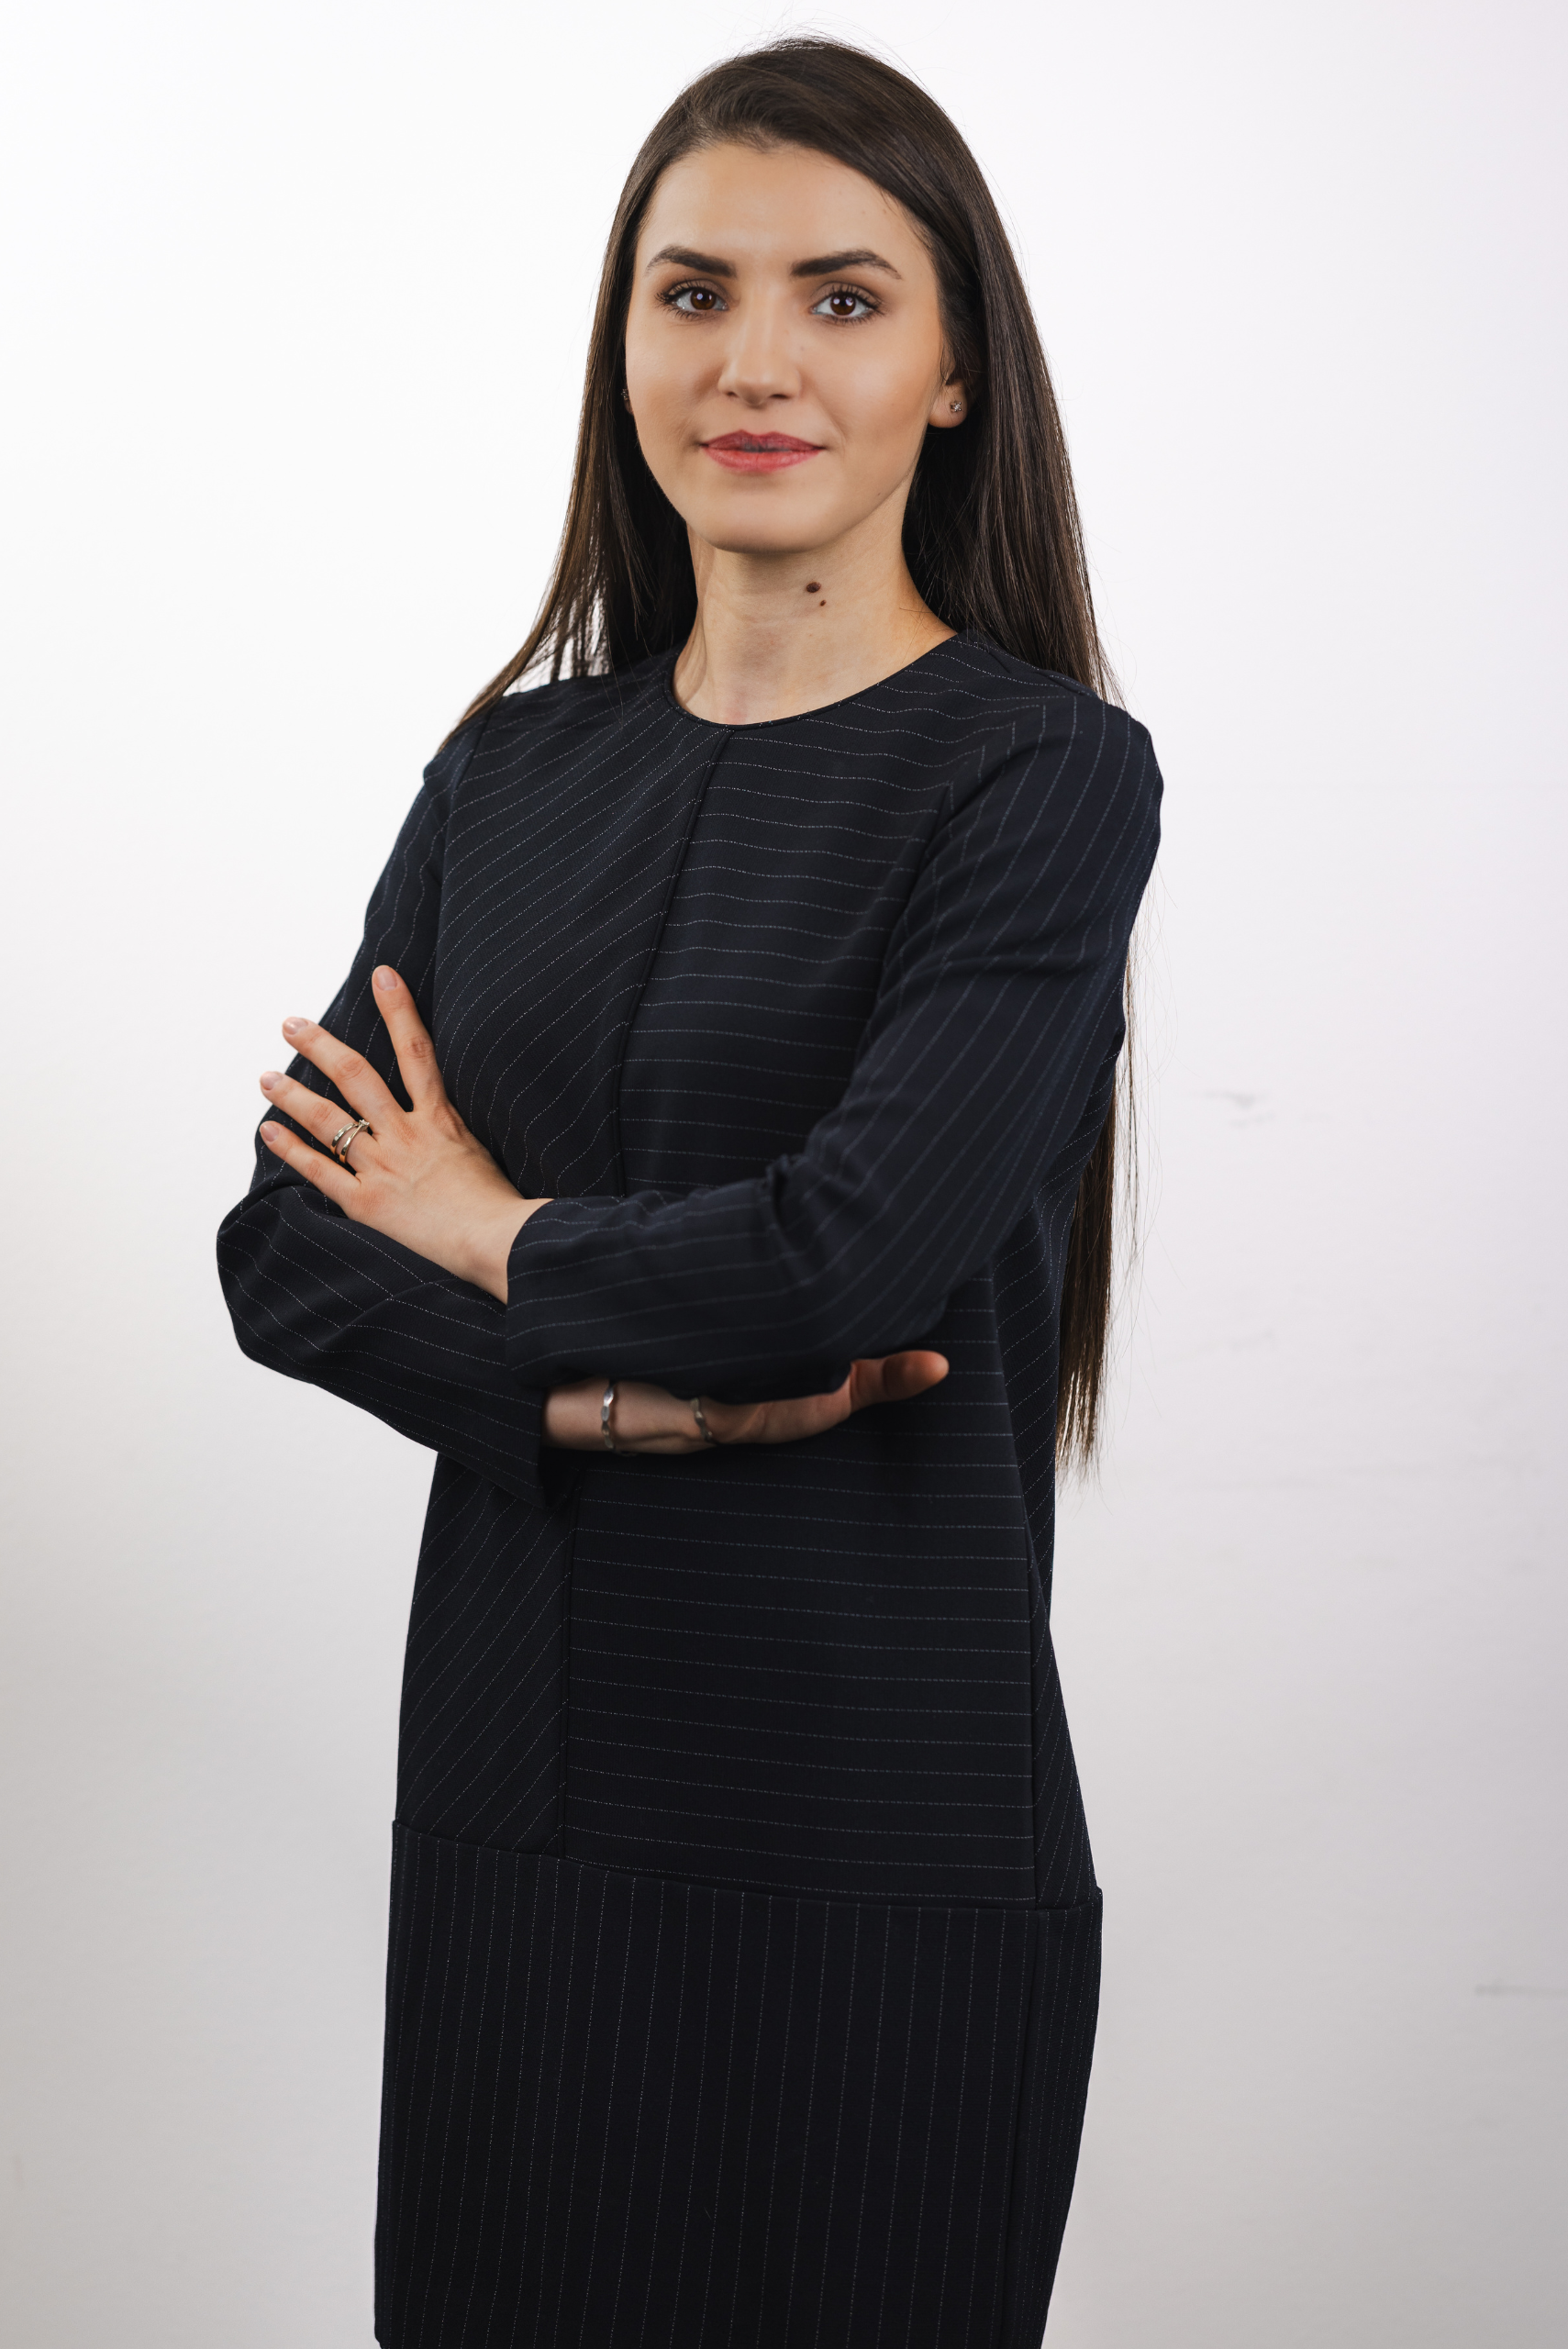 Picture of Cristina Ceausu